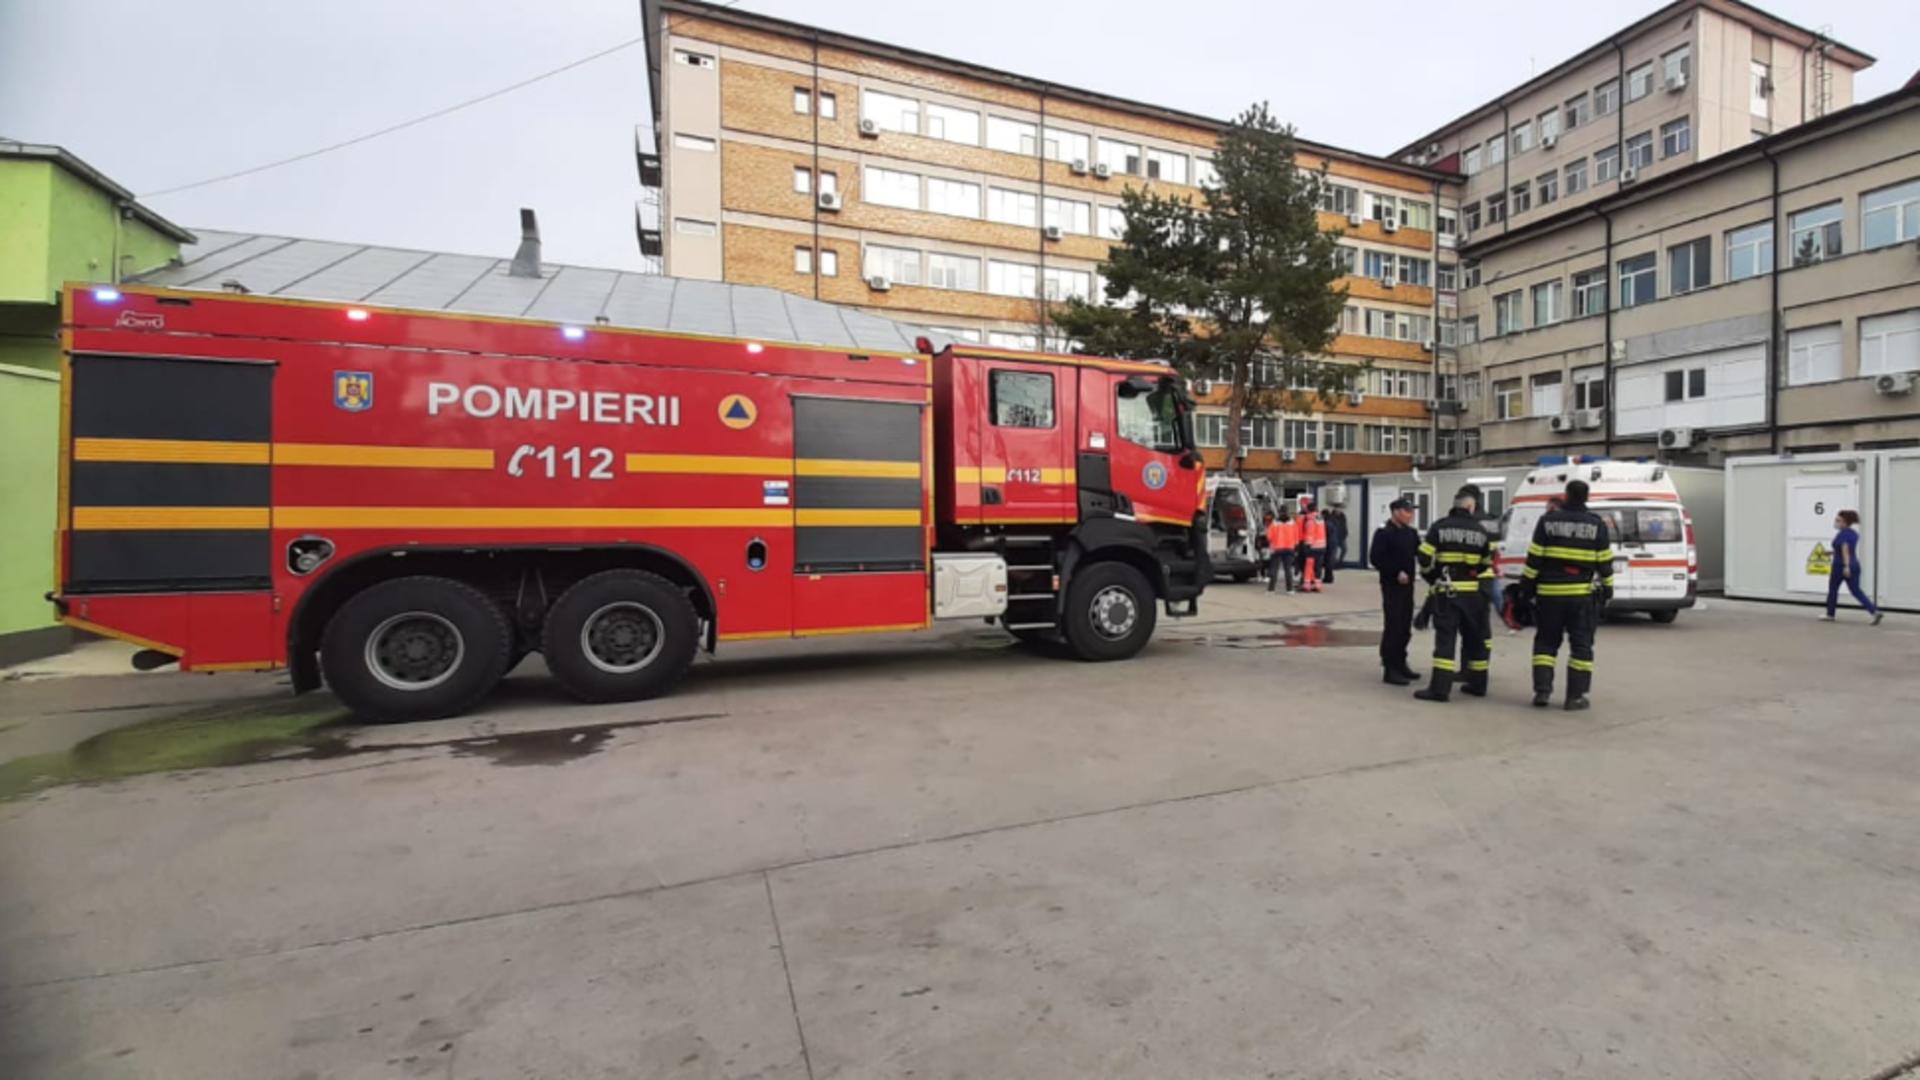 Alertă la Spitalul Județean Buzău, au fost mobilizate toate autospecialele pompierilor. 18 pacienți evacuați. Ce s-a întâmplat, de fapt? – FOTO/VIDEO